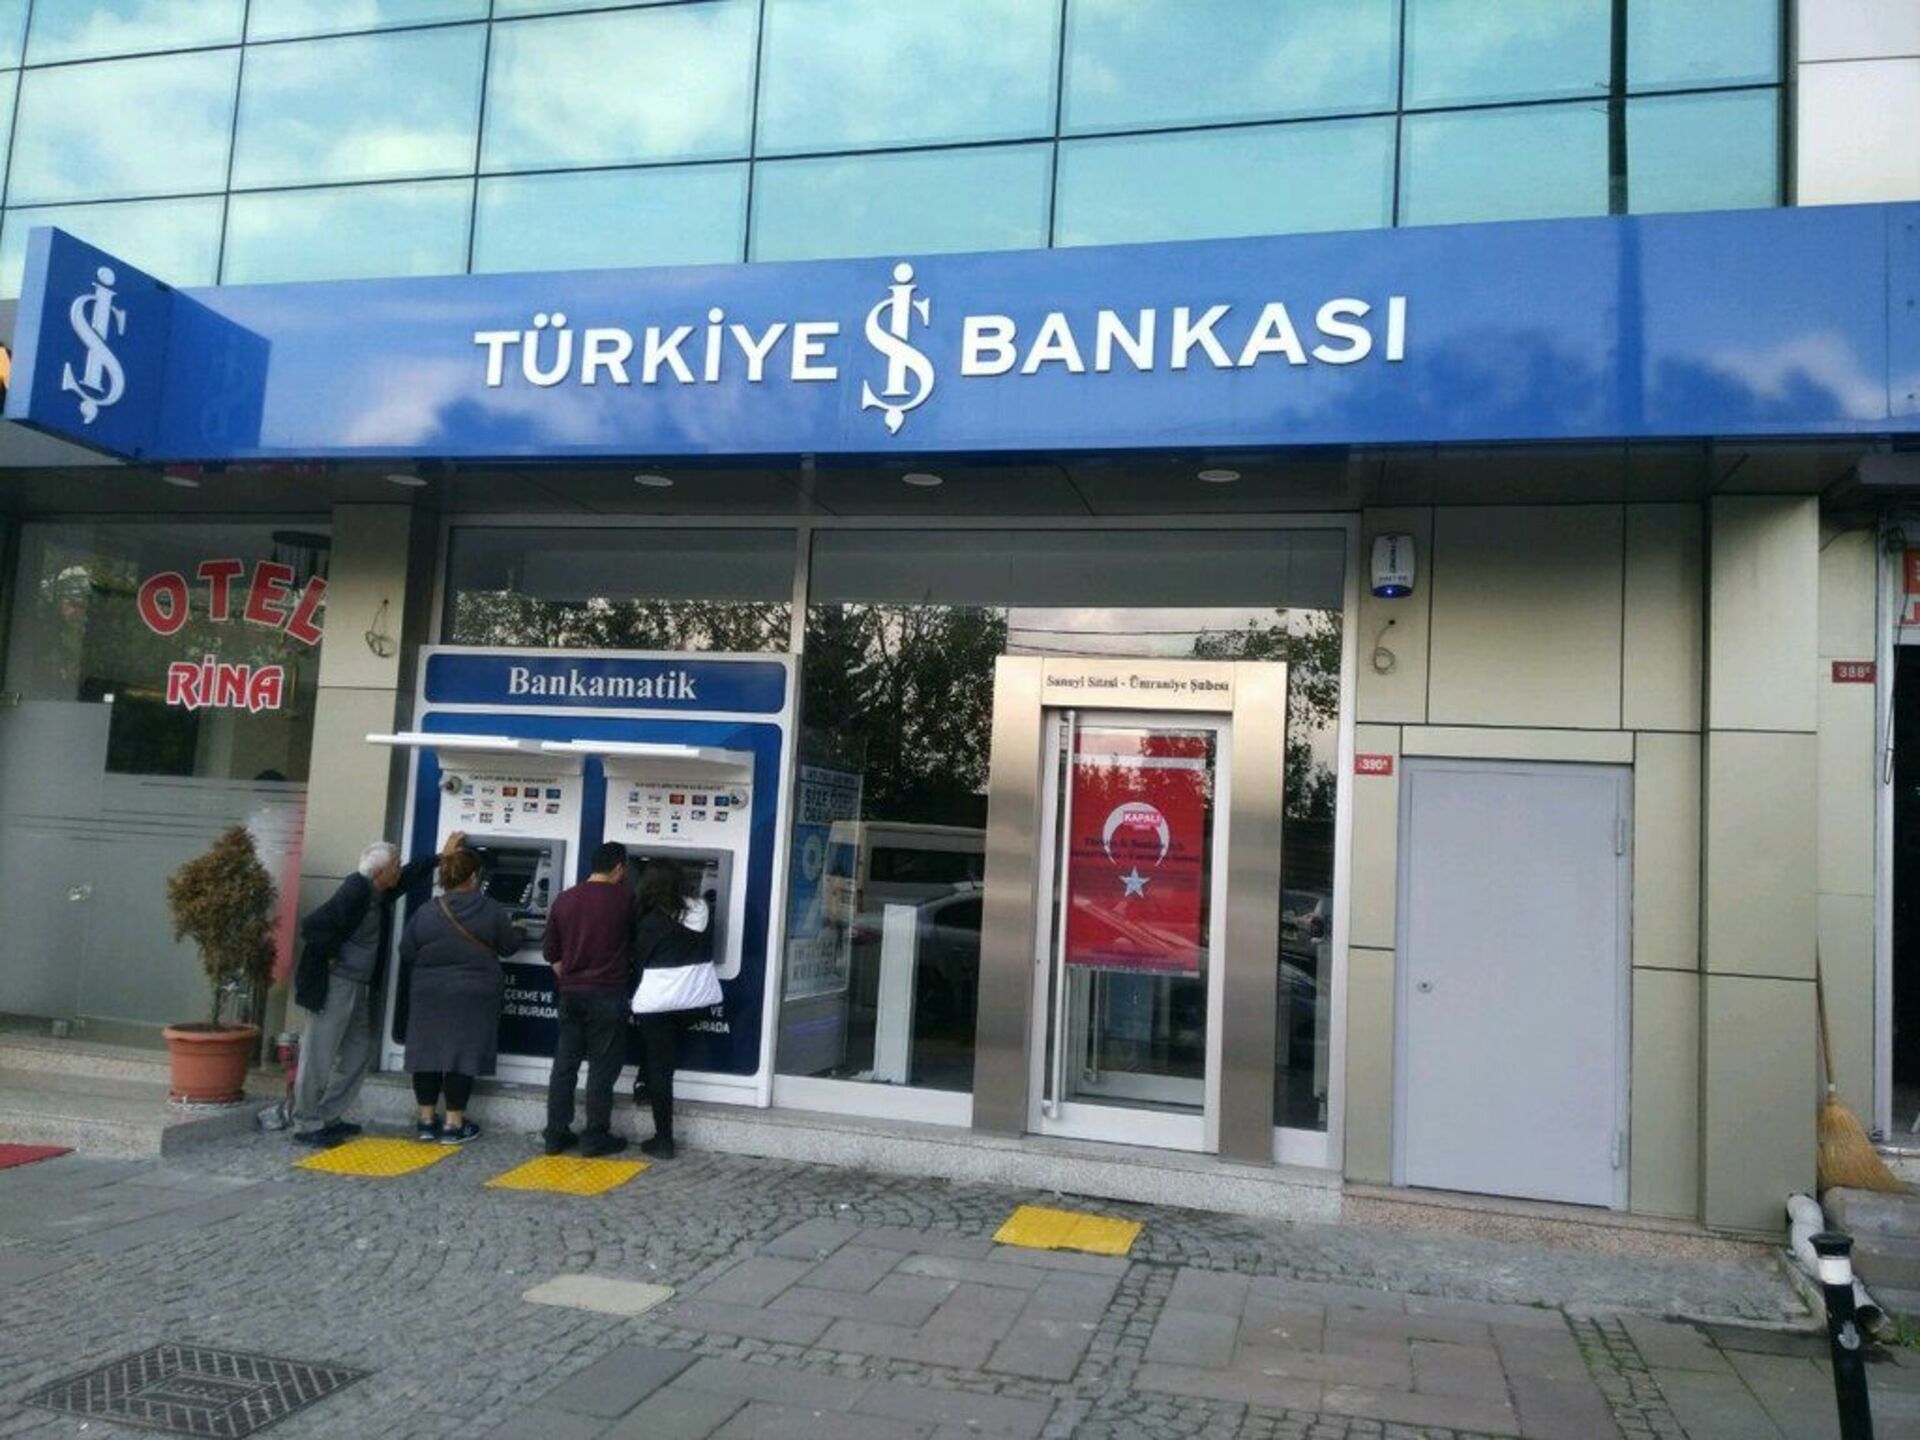 Ис банк сайт. Türkiye iş Bankasi банк в Турции. Банки Турции ИШБАНК. Турецкий банк в Стамбуле. Банкоматы в Турции.